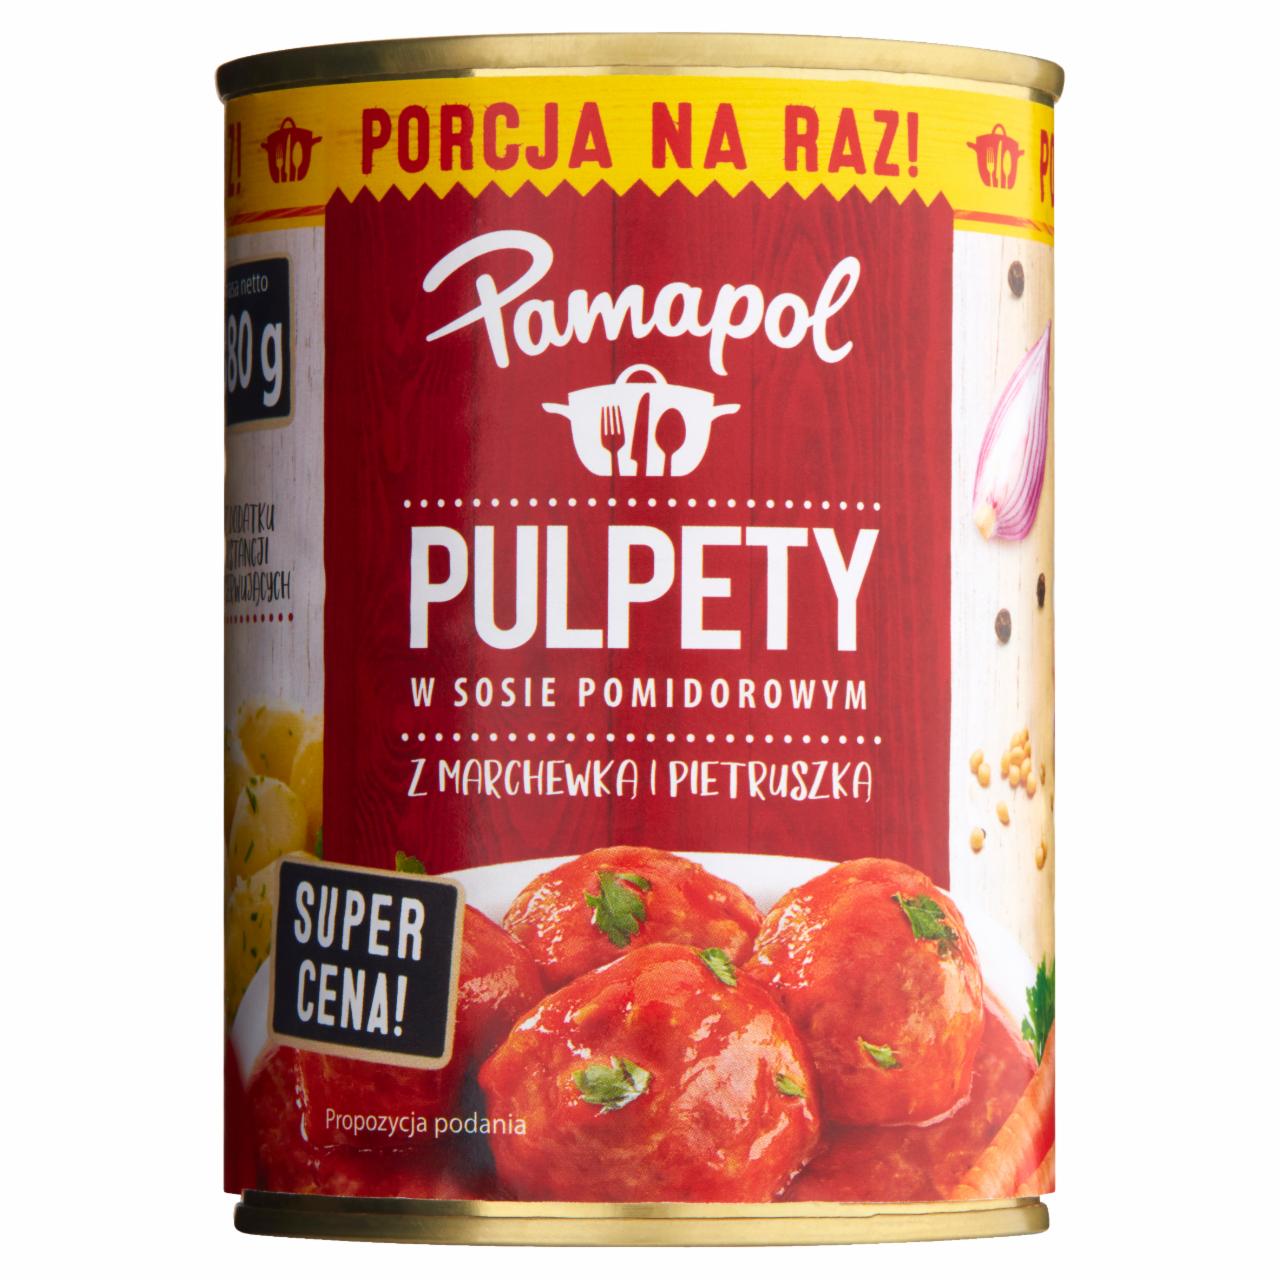 Zdjęcia - Pamapol Pulpety w sosie pomidorowym z marchewką i pietruszką 380 g